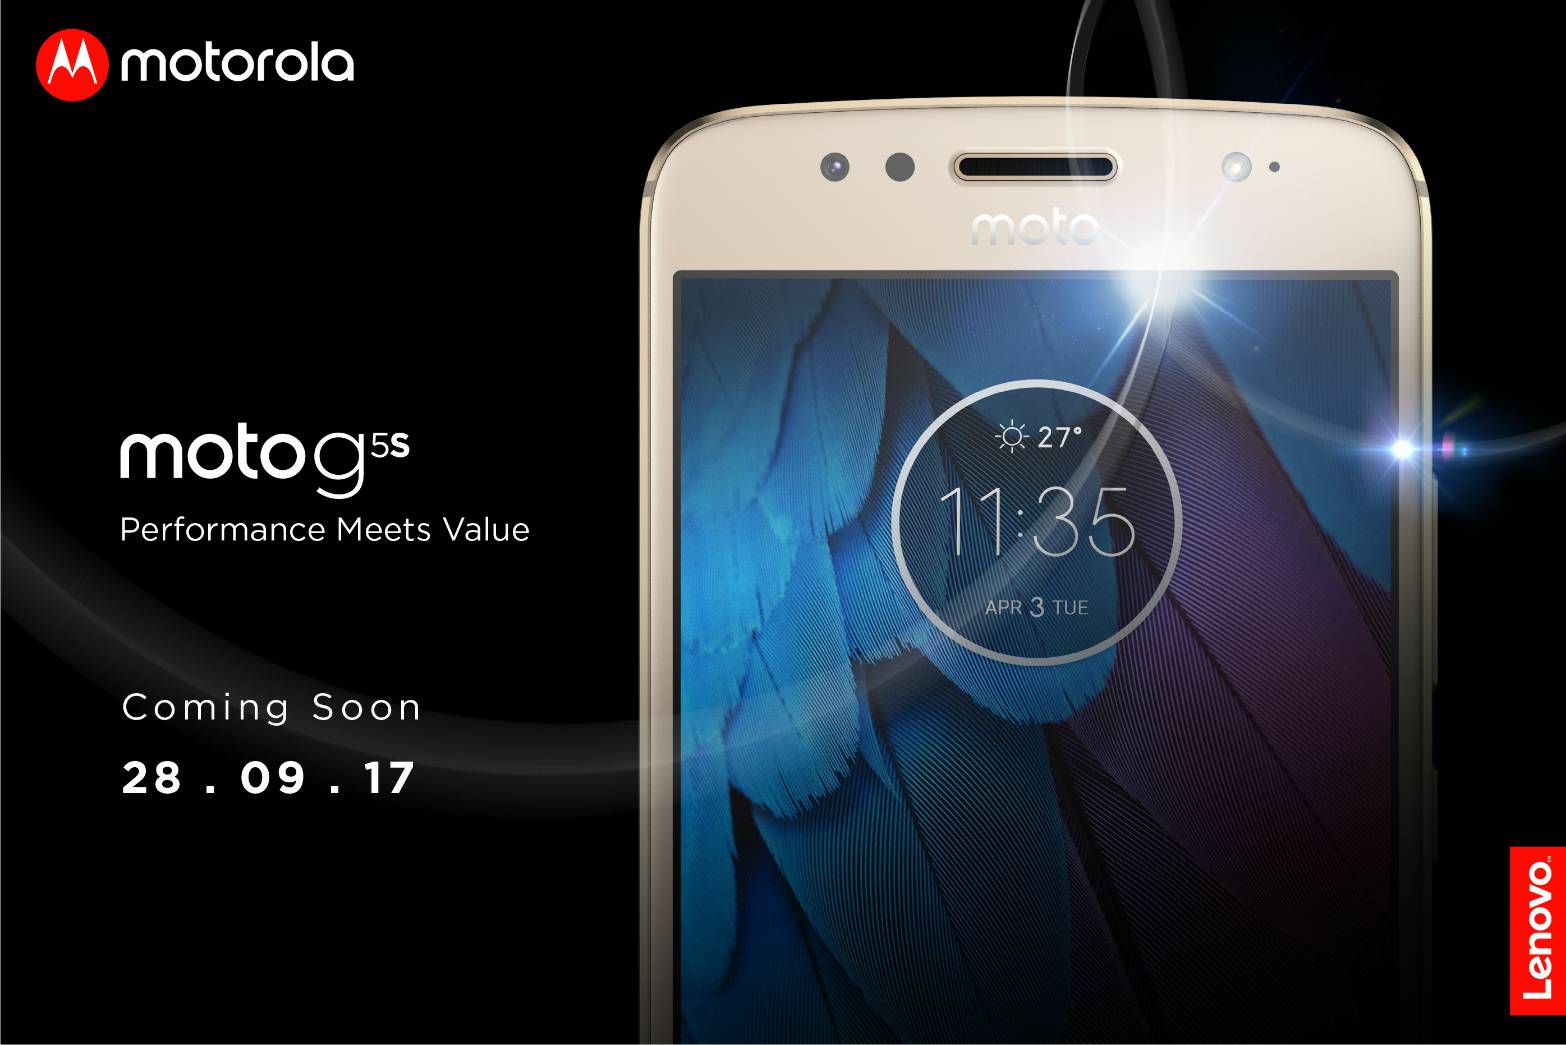 Pre Announcement Moto G5s 03